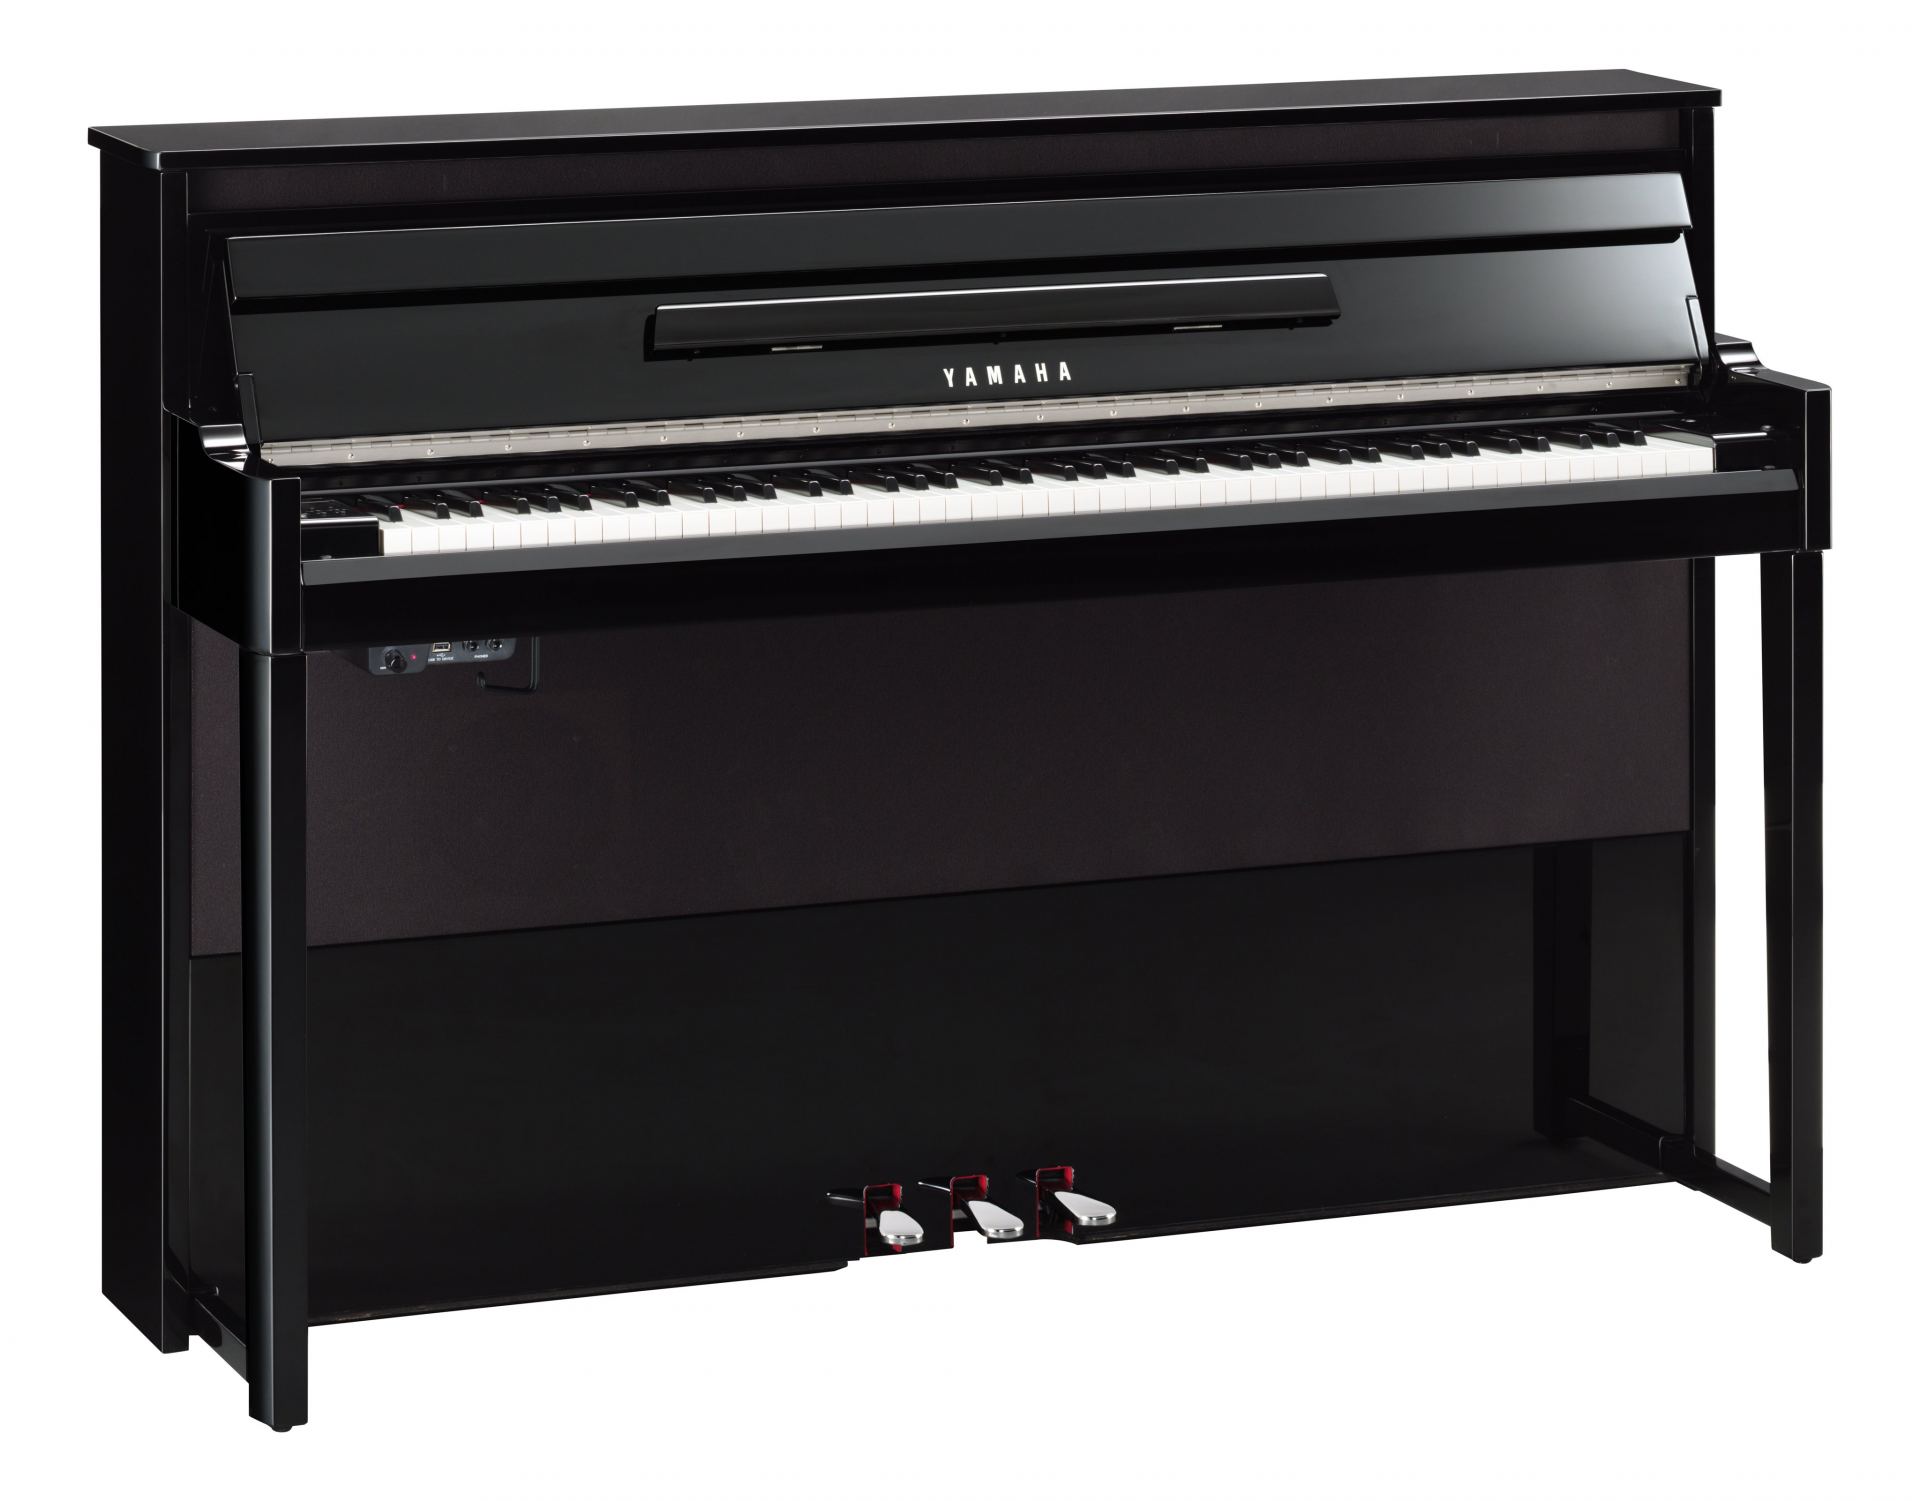 たしていま AETEE ピアノライト アップライト グランドデジタル プロフェッショナル LEDピアノランプ アイケア 5段階の色温度 5段階